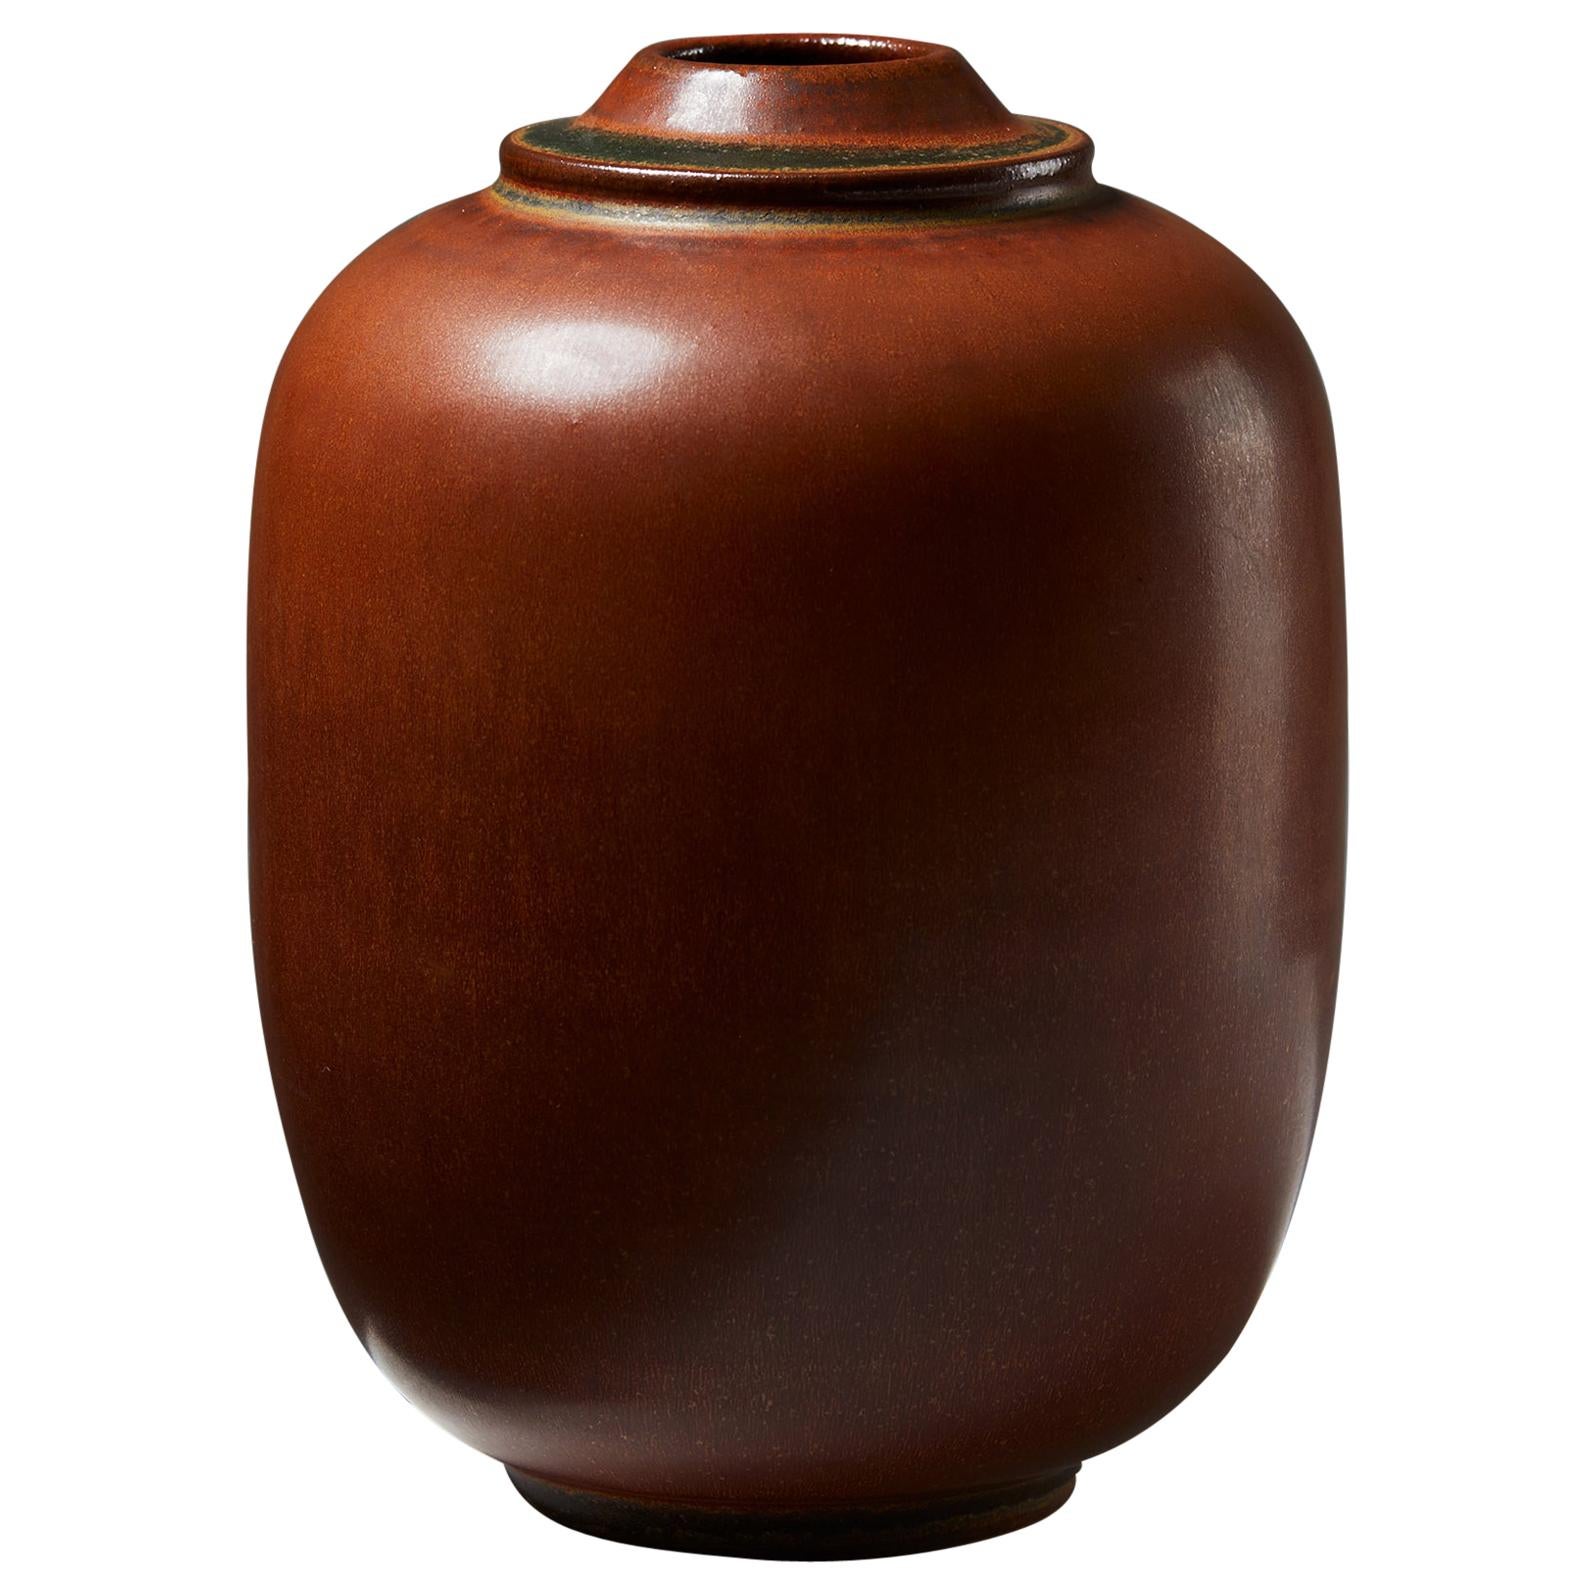 Vase ‘Tobo’ designed by Erich and Ingrid Triller, Sweden, 1950s